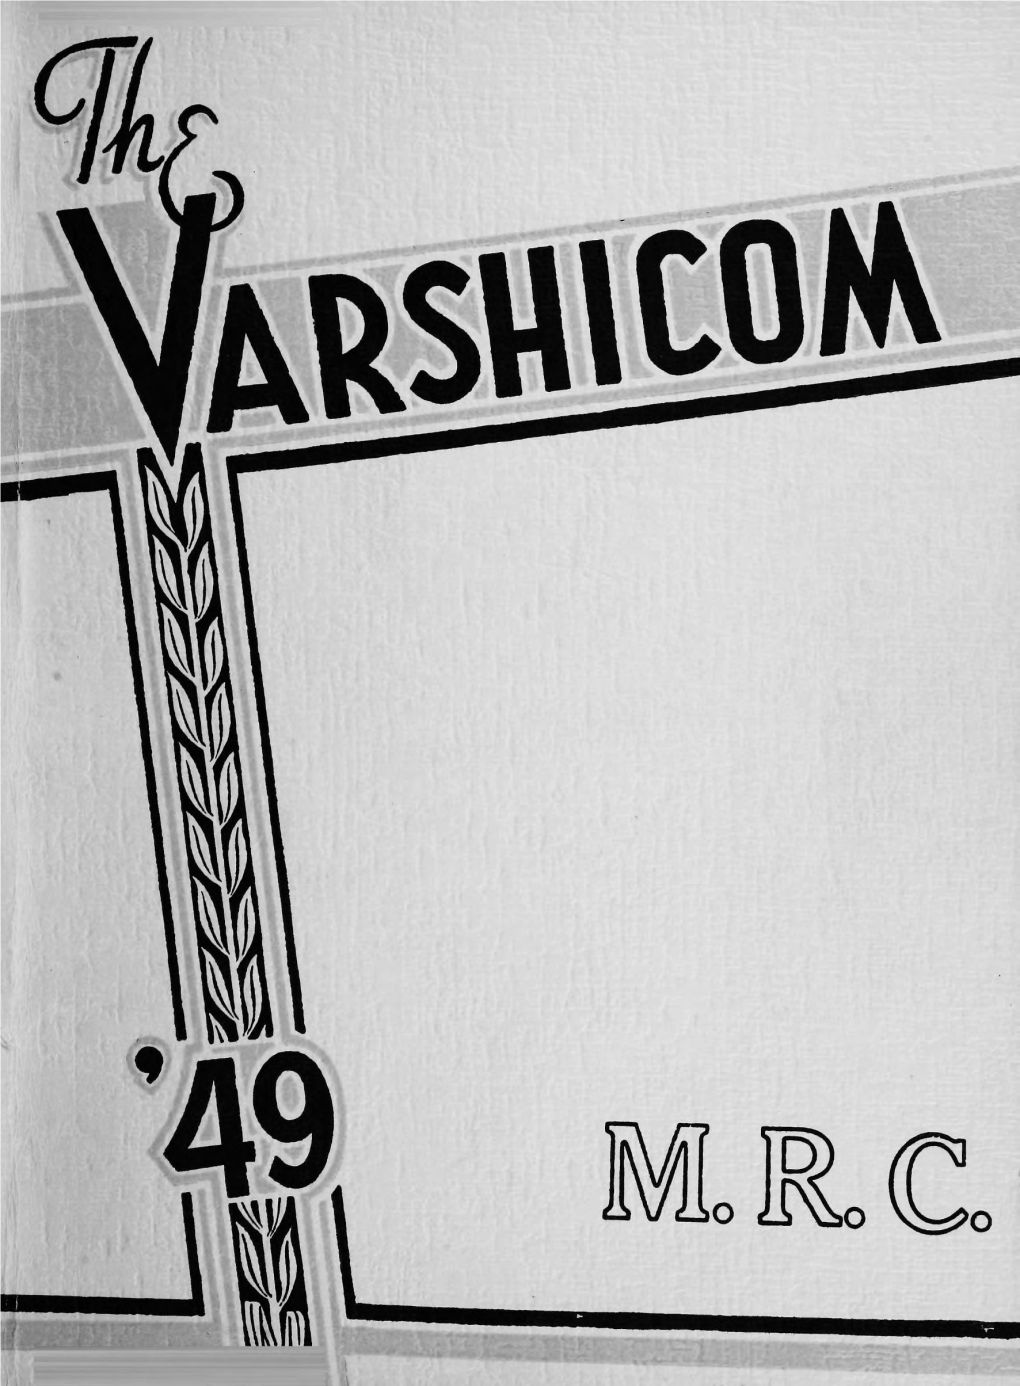 Varshicom 1949